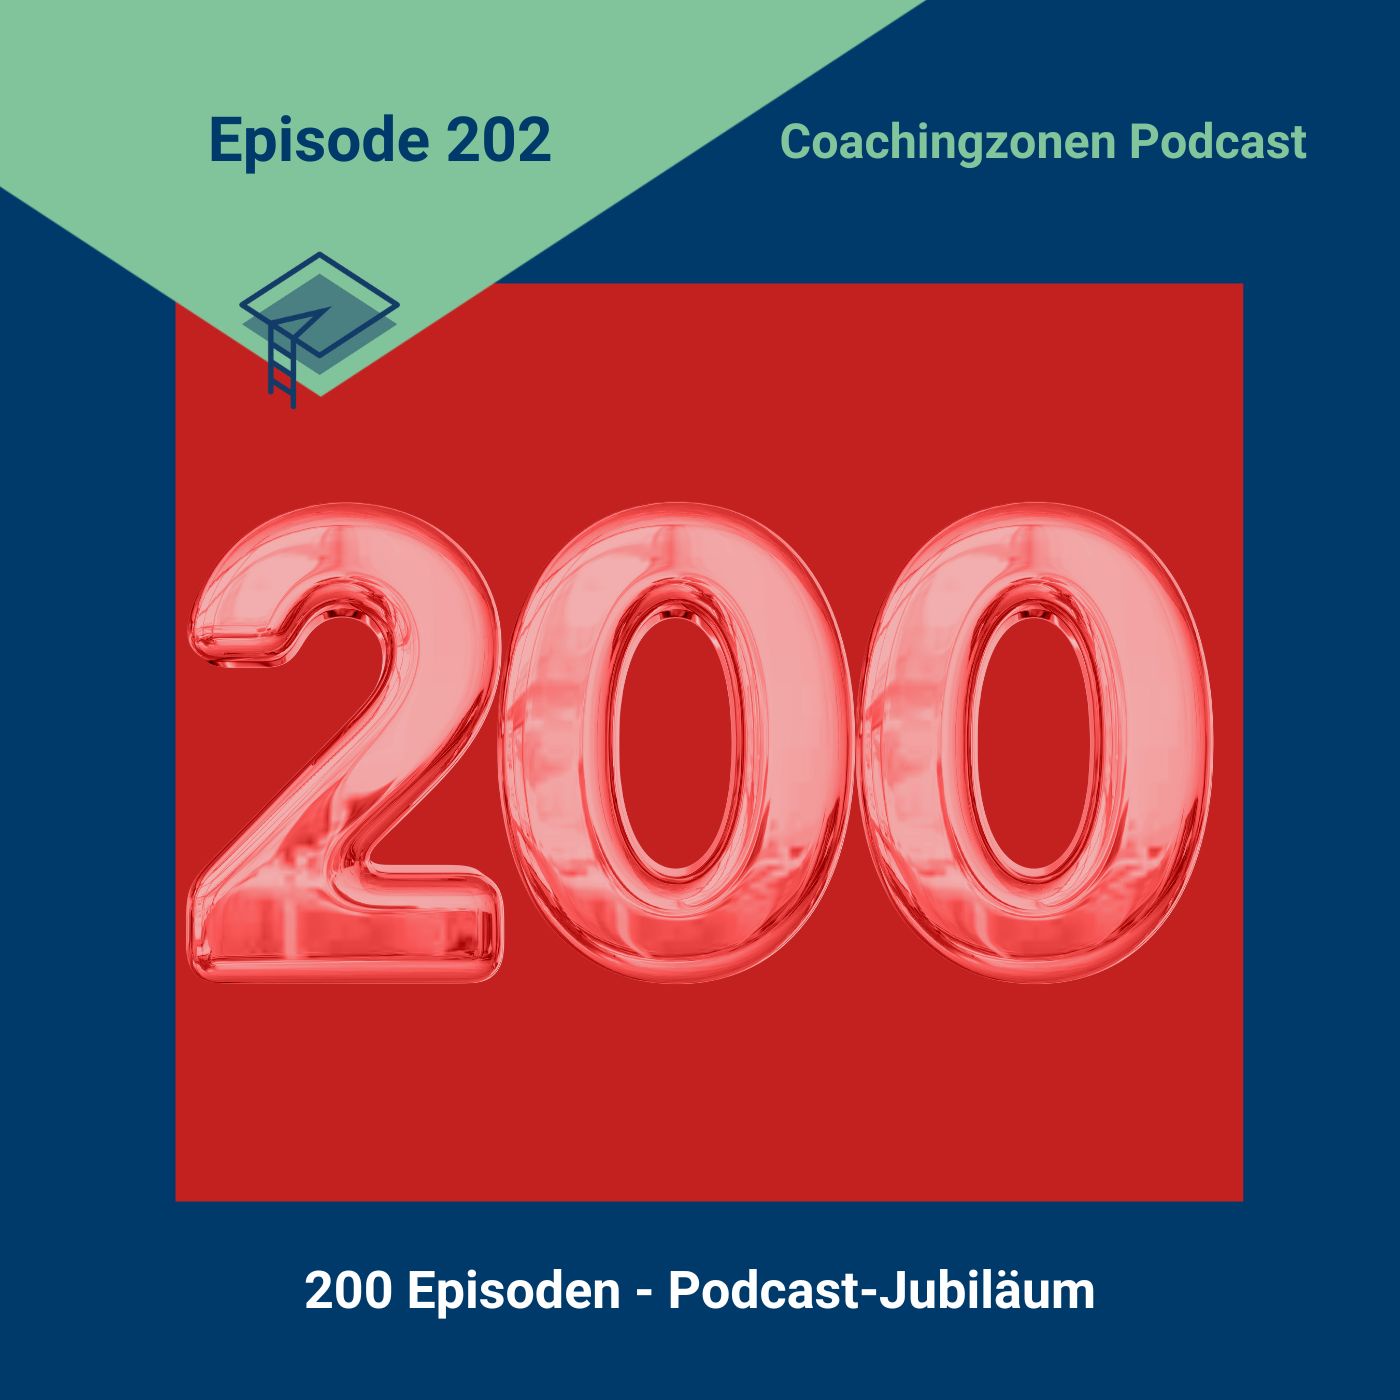 200 Episoden - Ein Podcast-Jubiläum (202)